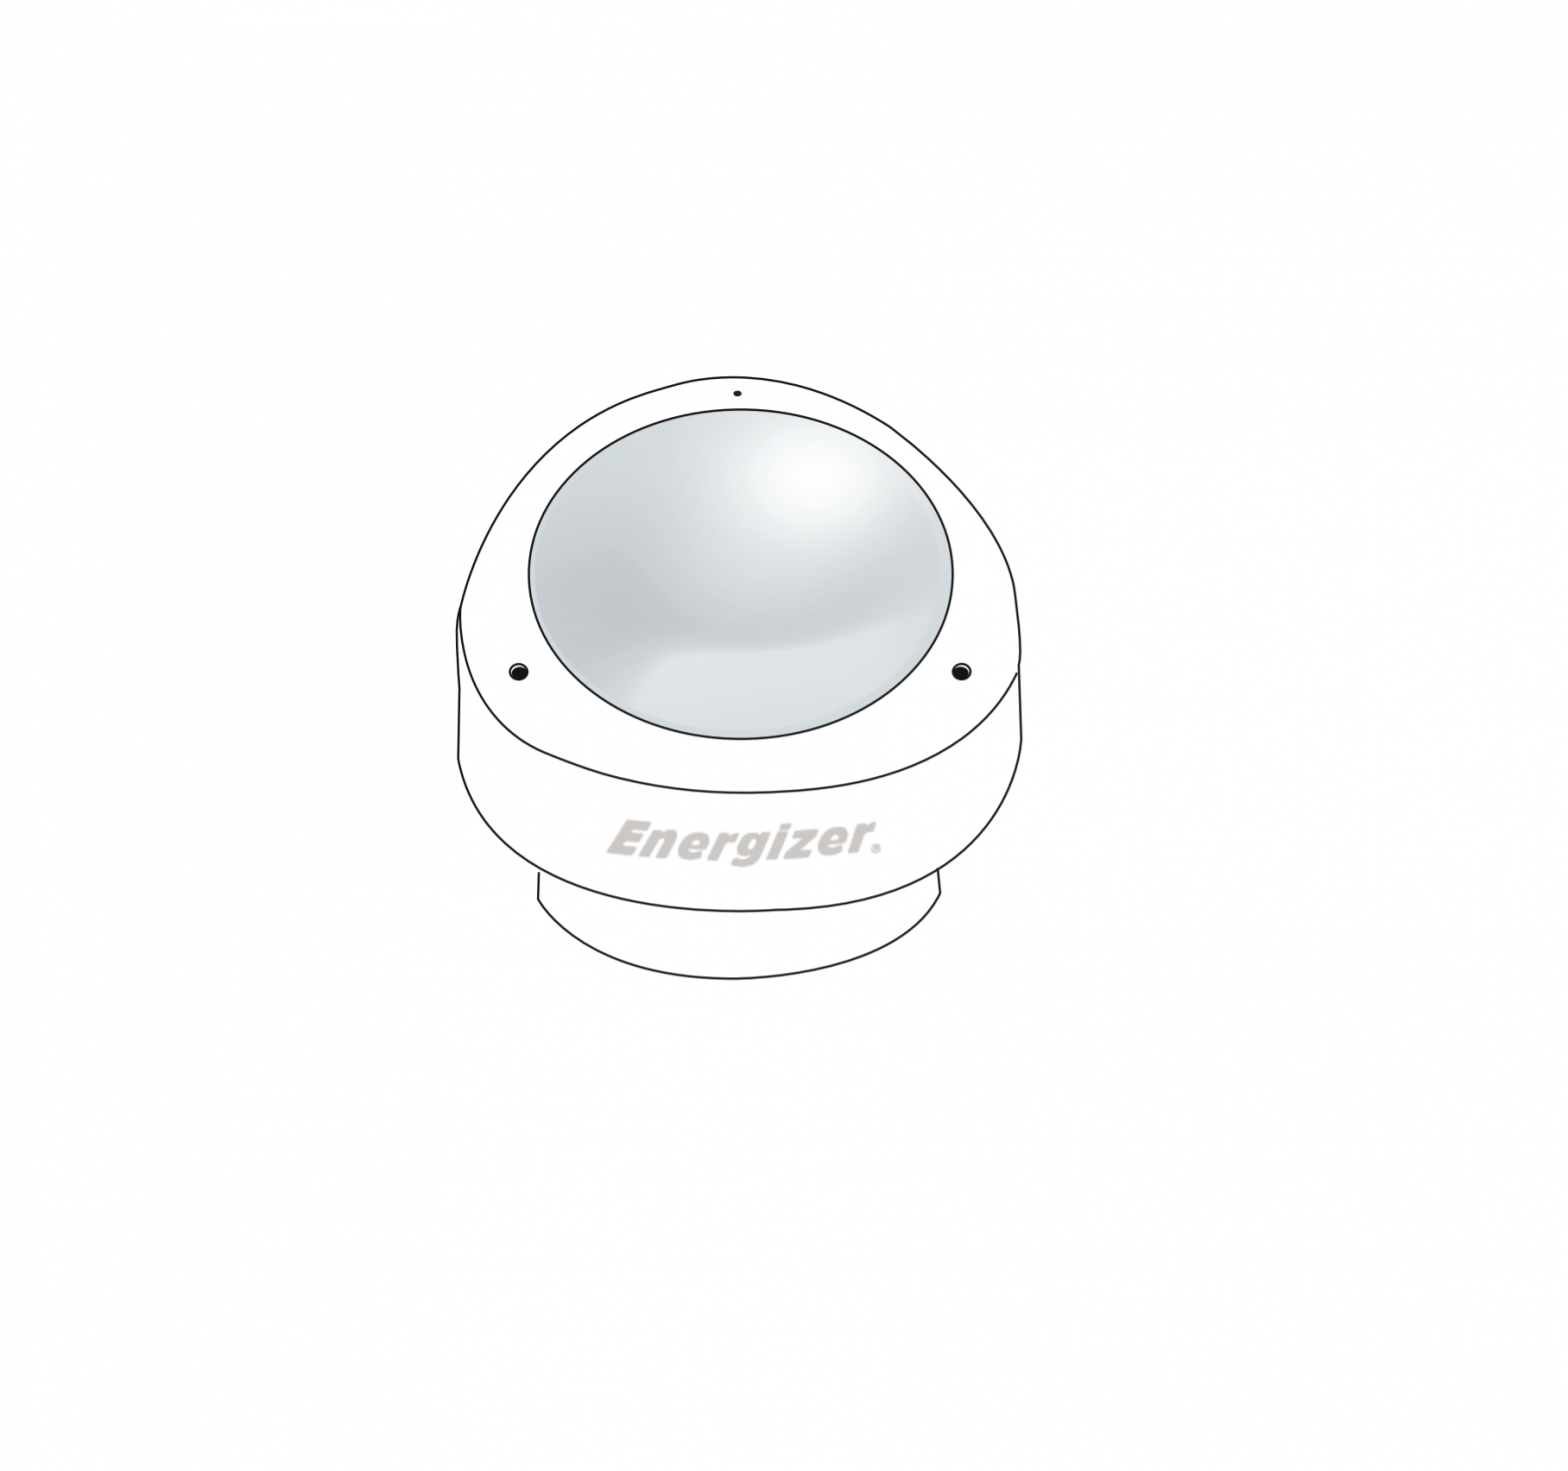 Energizer EMX4-1001-WHT Smart Motion Sensor User Guide